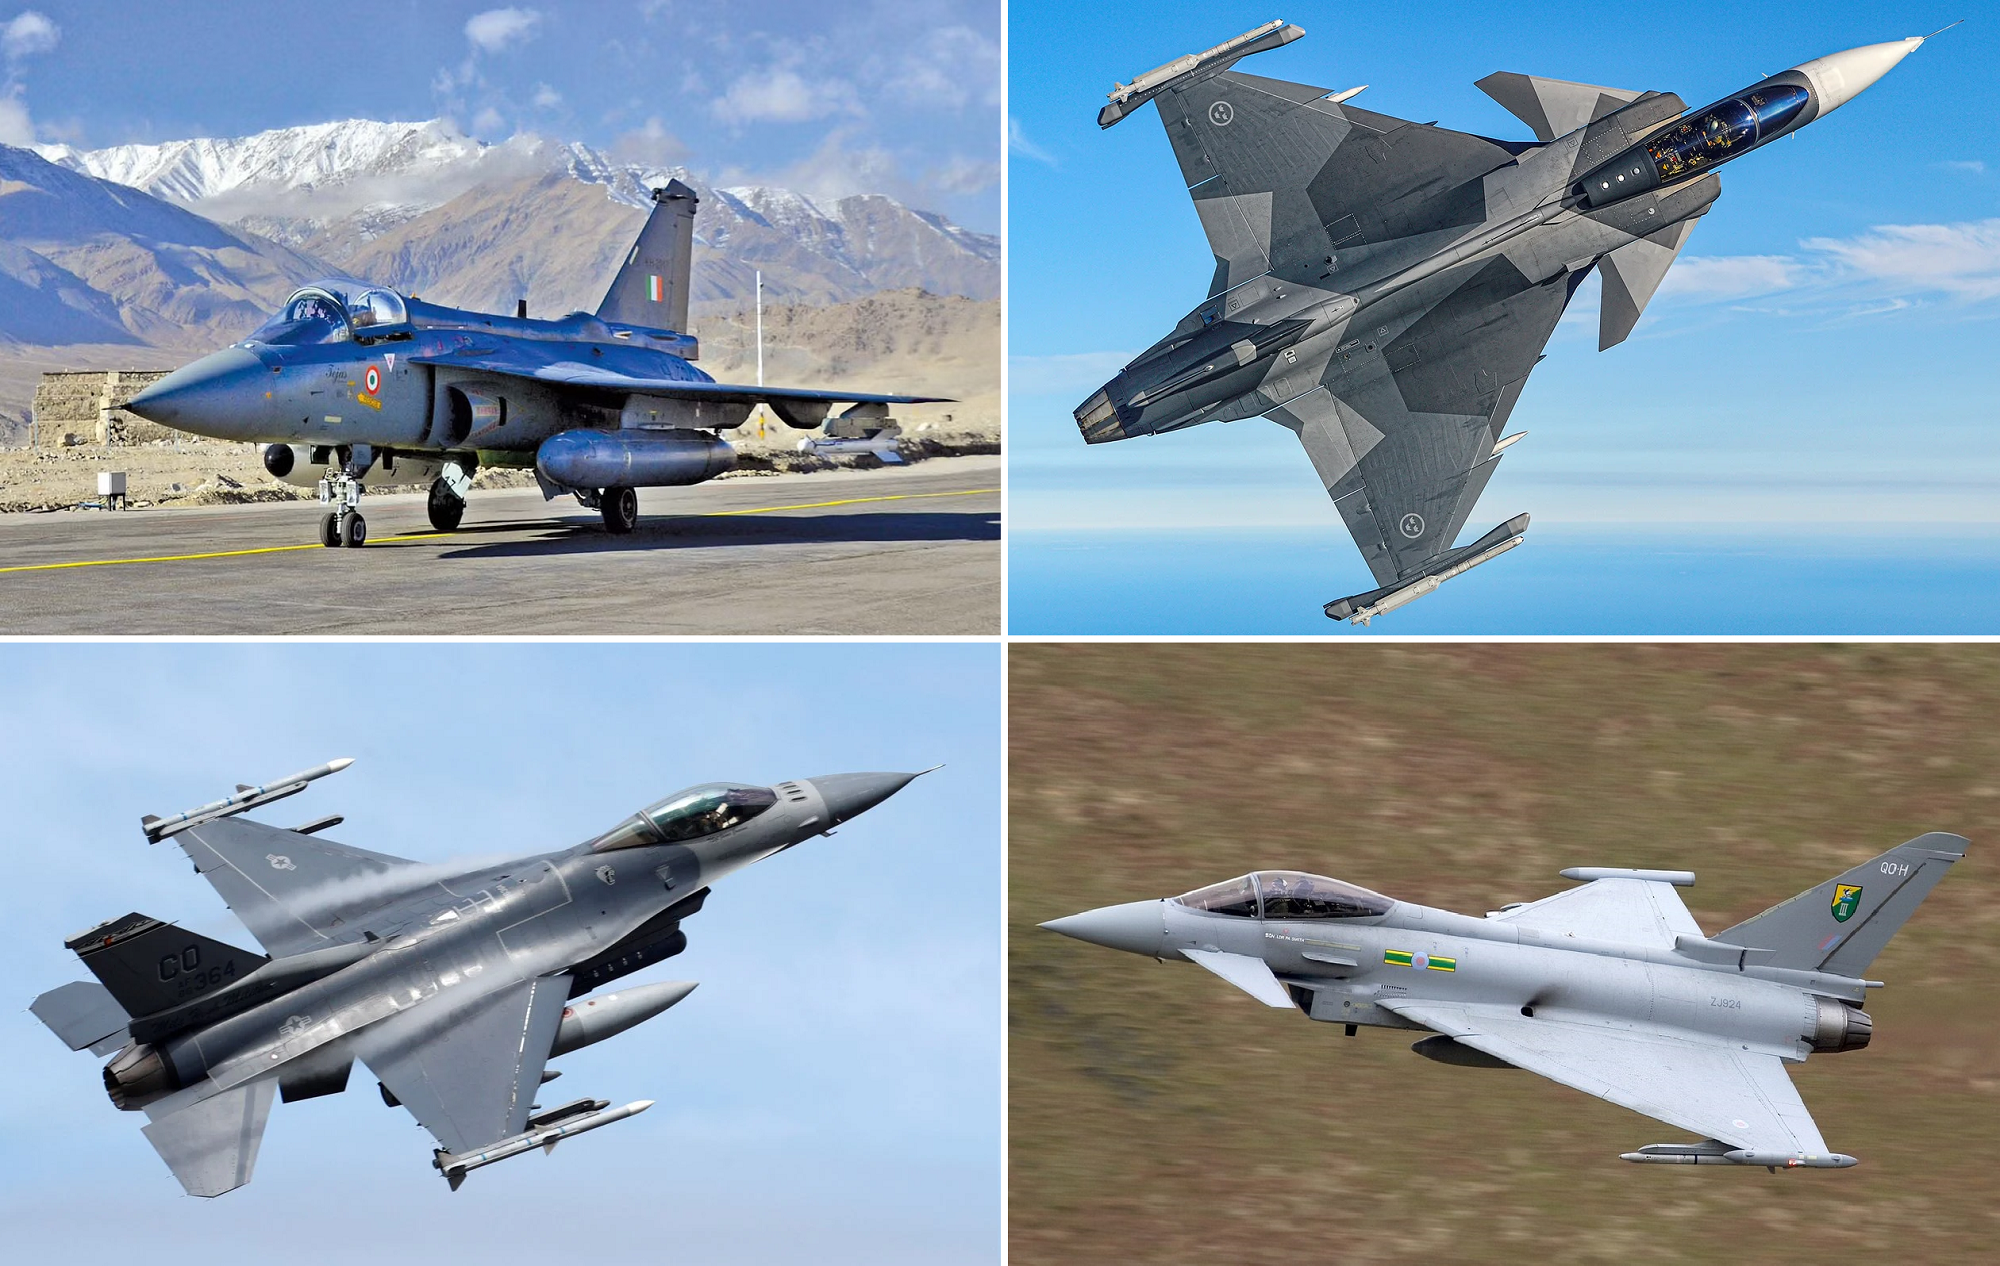 Kolumbia uważa, że ​​myśliwce F-16 Fighting Falcon, Eurofighter Typhoon, Gripen-E i Tejas Mk1 zastąpią starsze samoloty IAI Kfir